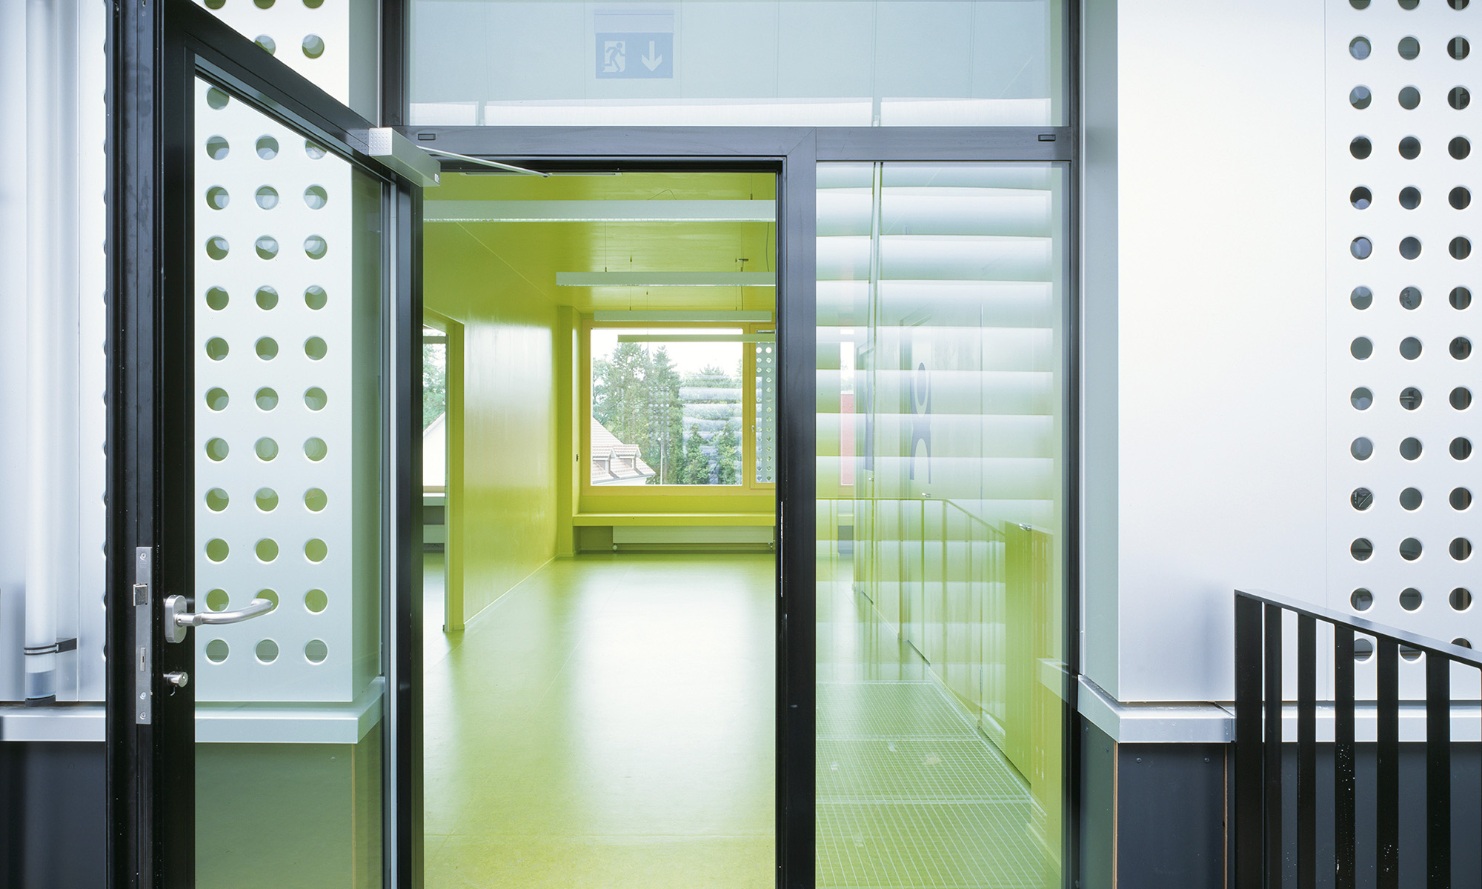 Espace d’entrée au design attrayant du pavillon provisoire de l’école à Männedorf avec porte vitrée et sol jaune dans la zone d’entrée.